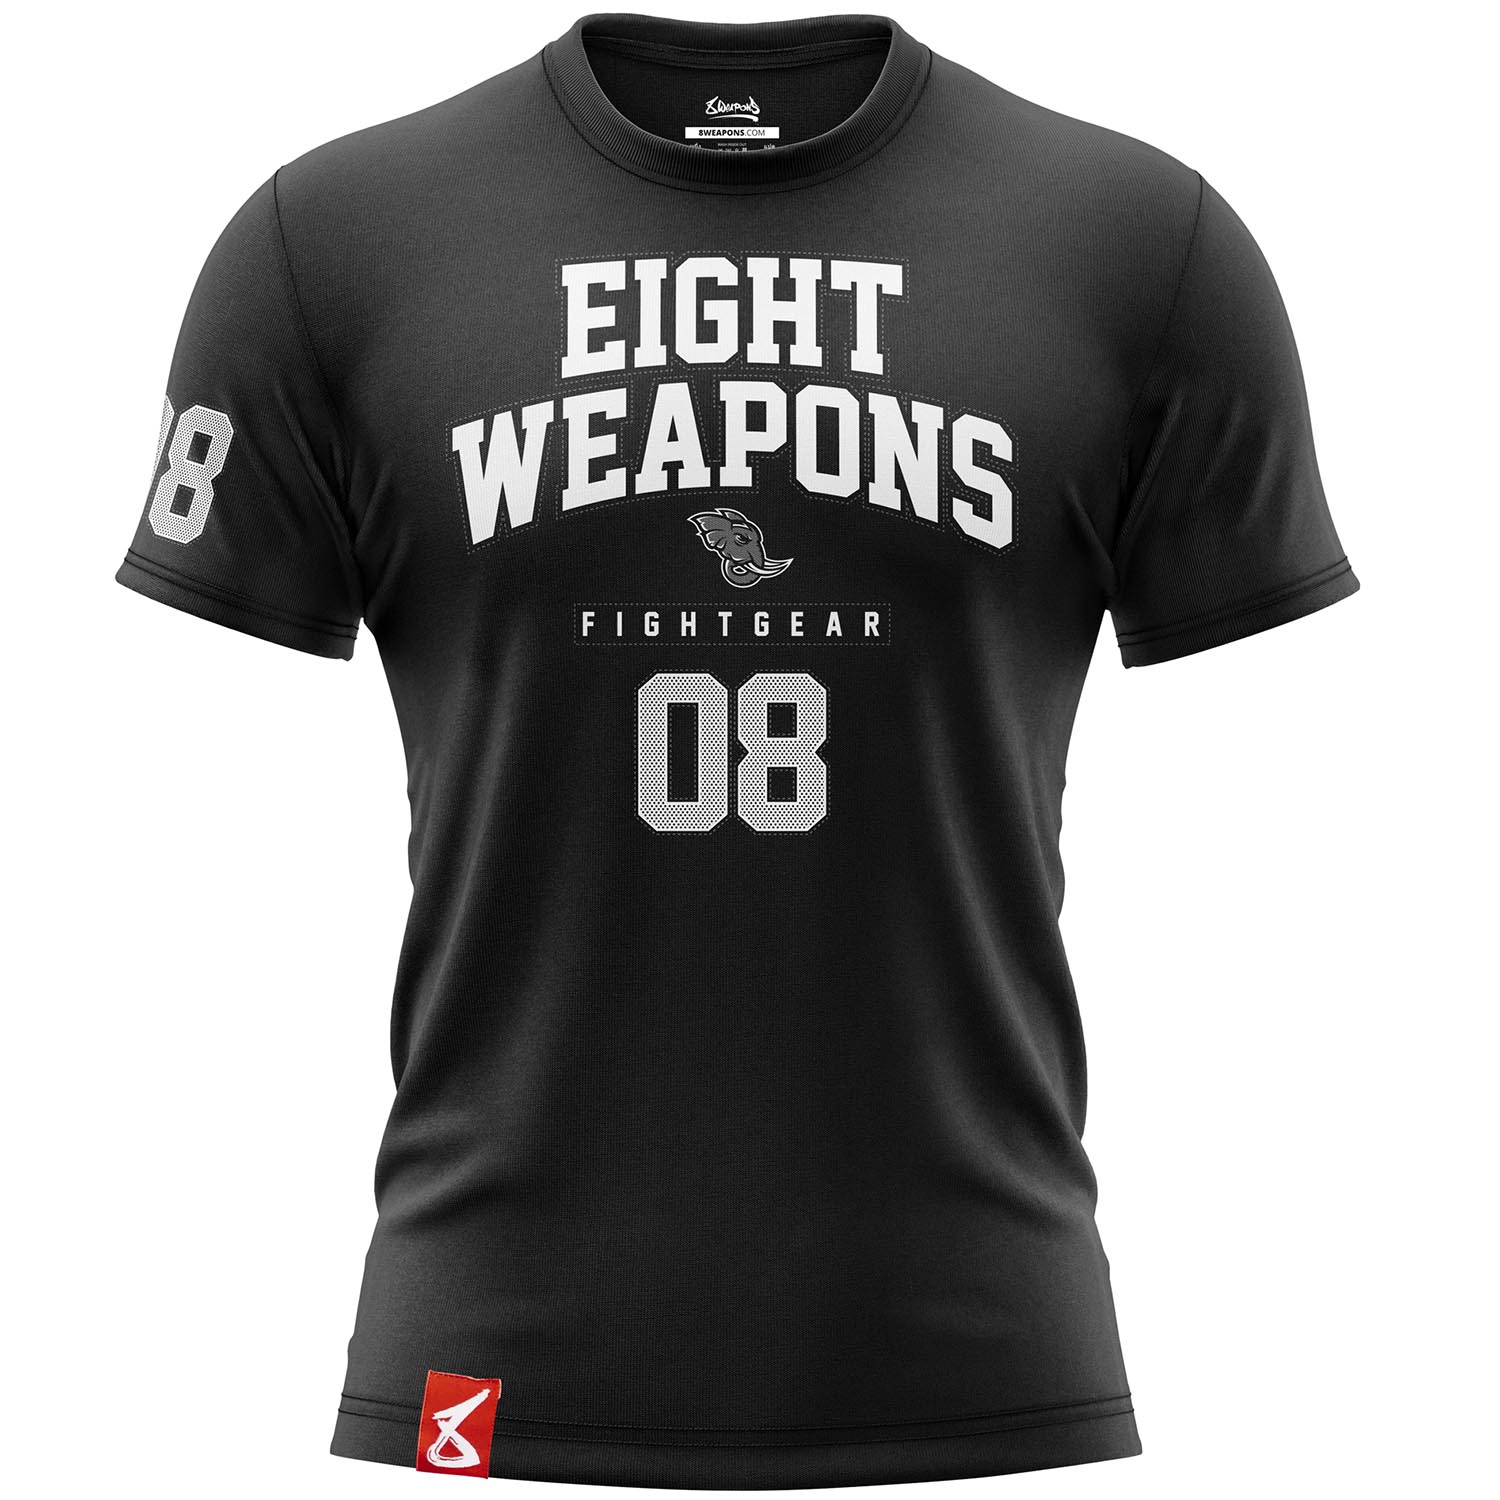 8 WEAPONS T-Shirt, Team 08 2.0, schwarz, S